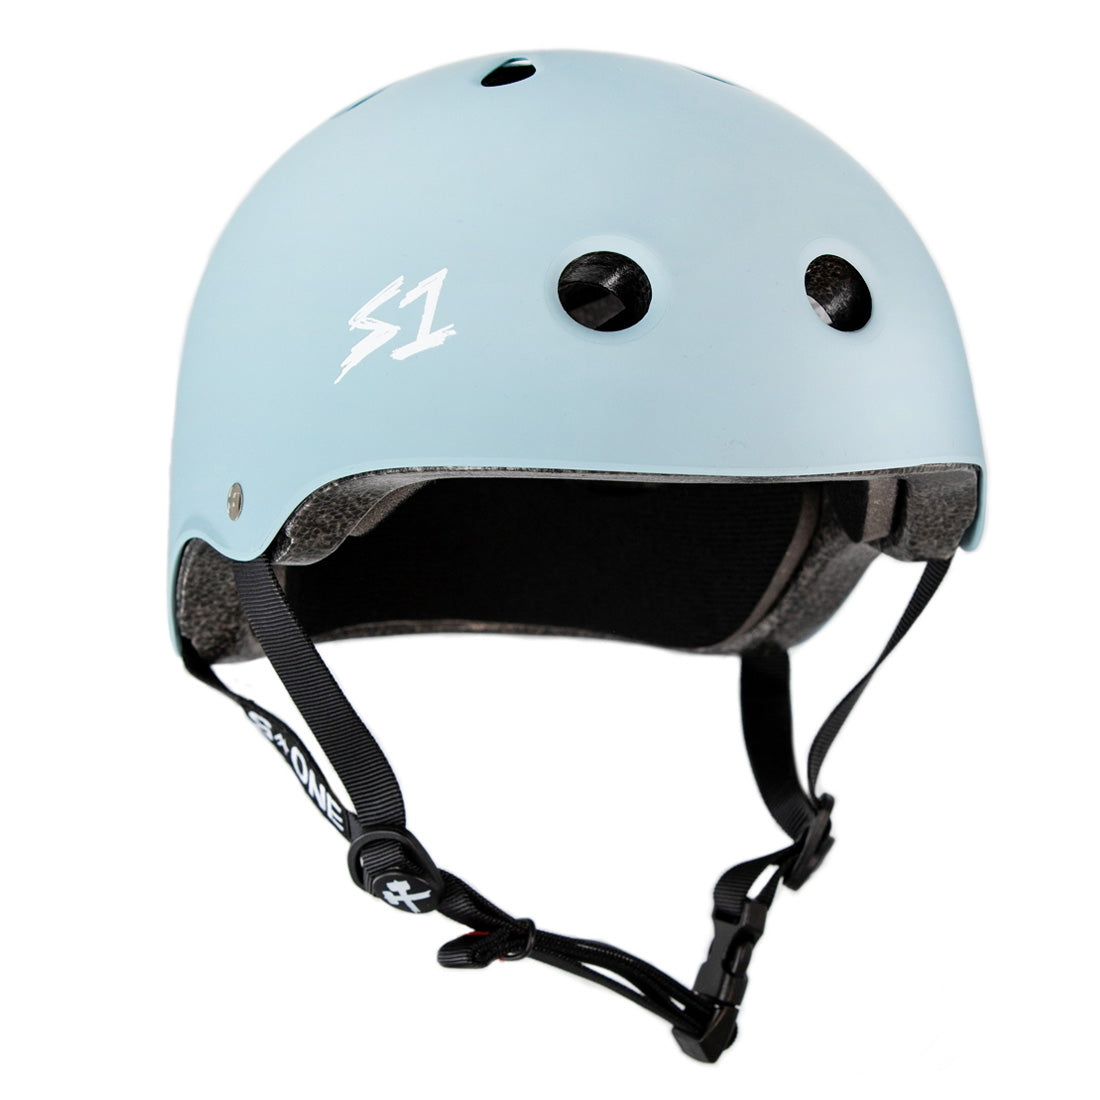 S-One Lifer Helmet - Slate Blue Matte Helmets